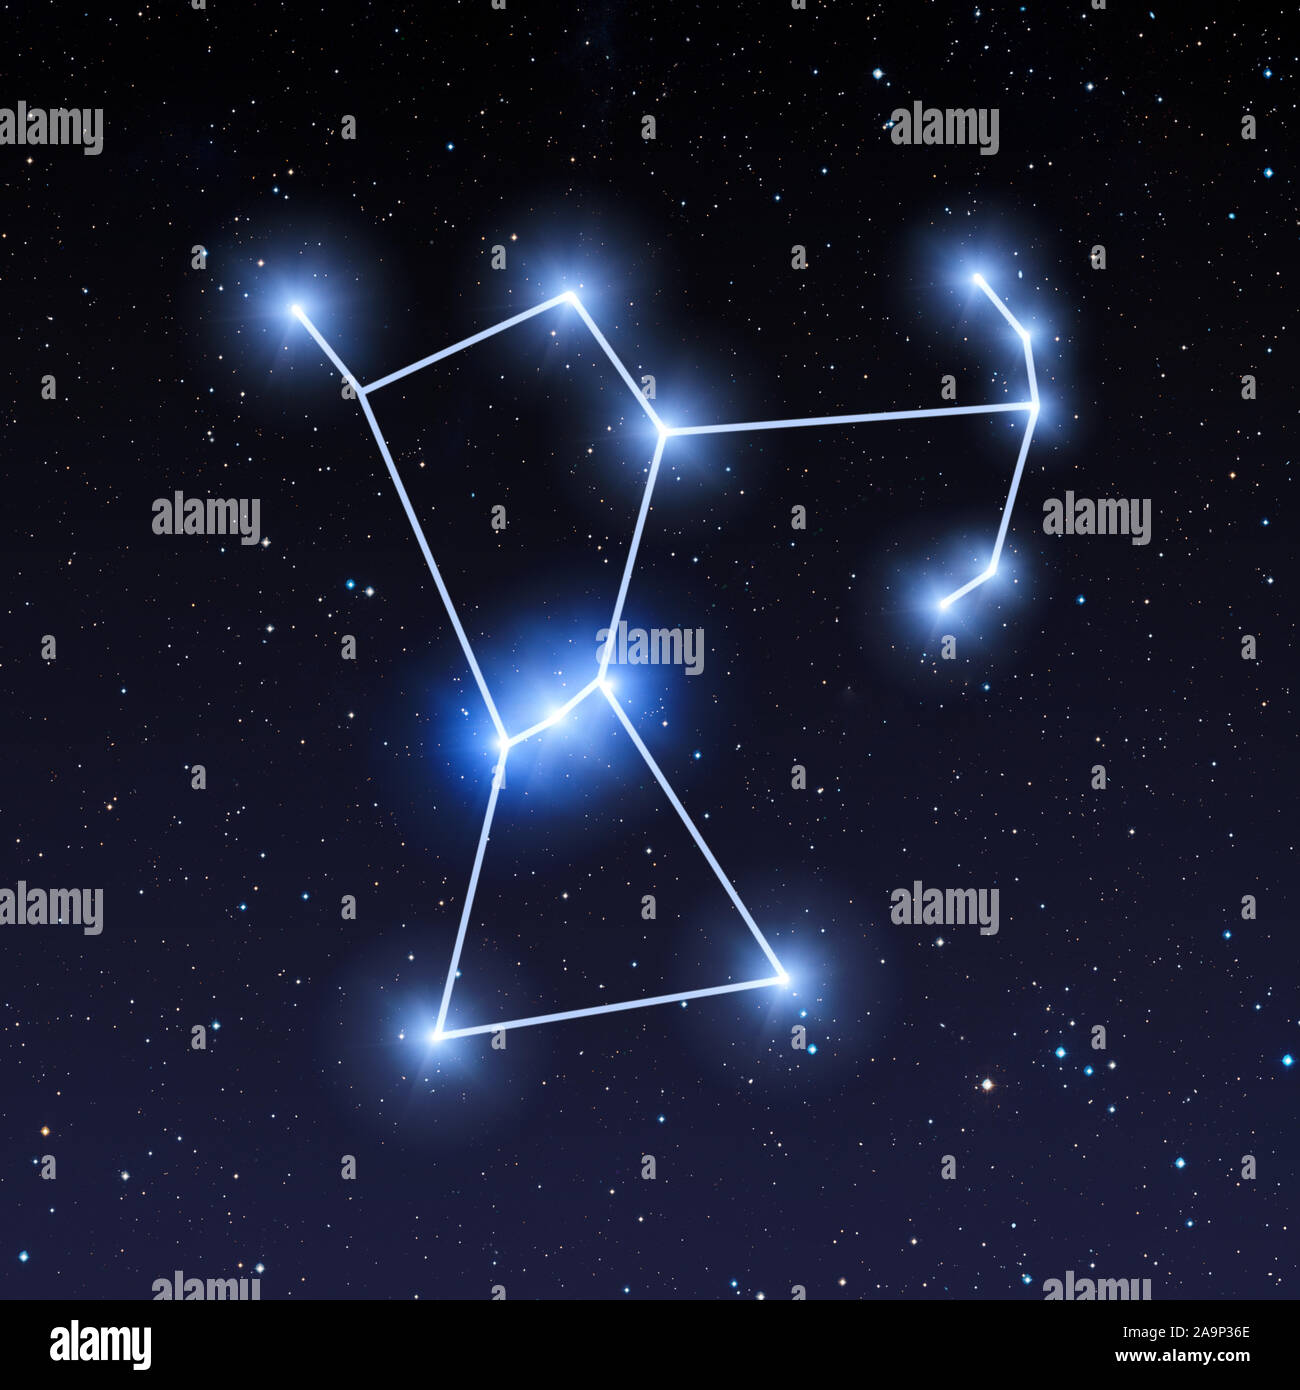 Orion constellation immagini e fotografie stock ad alta risoluzione - Alamy